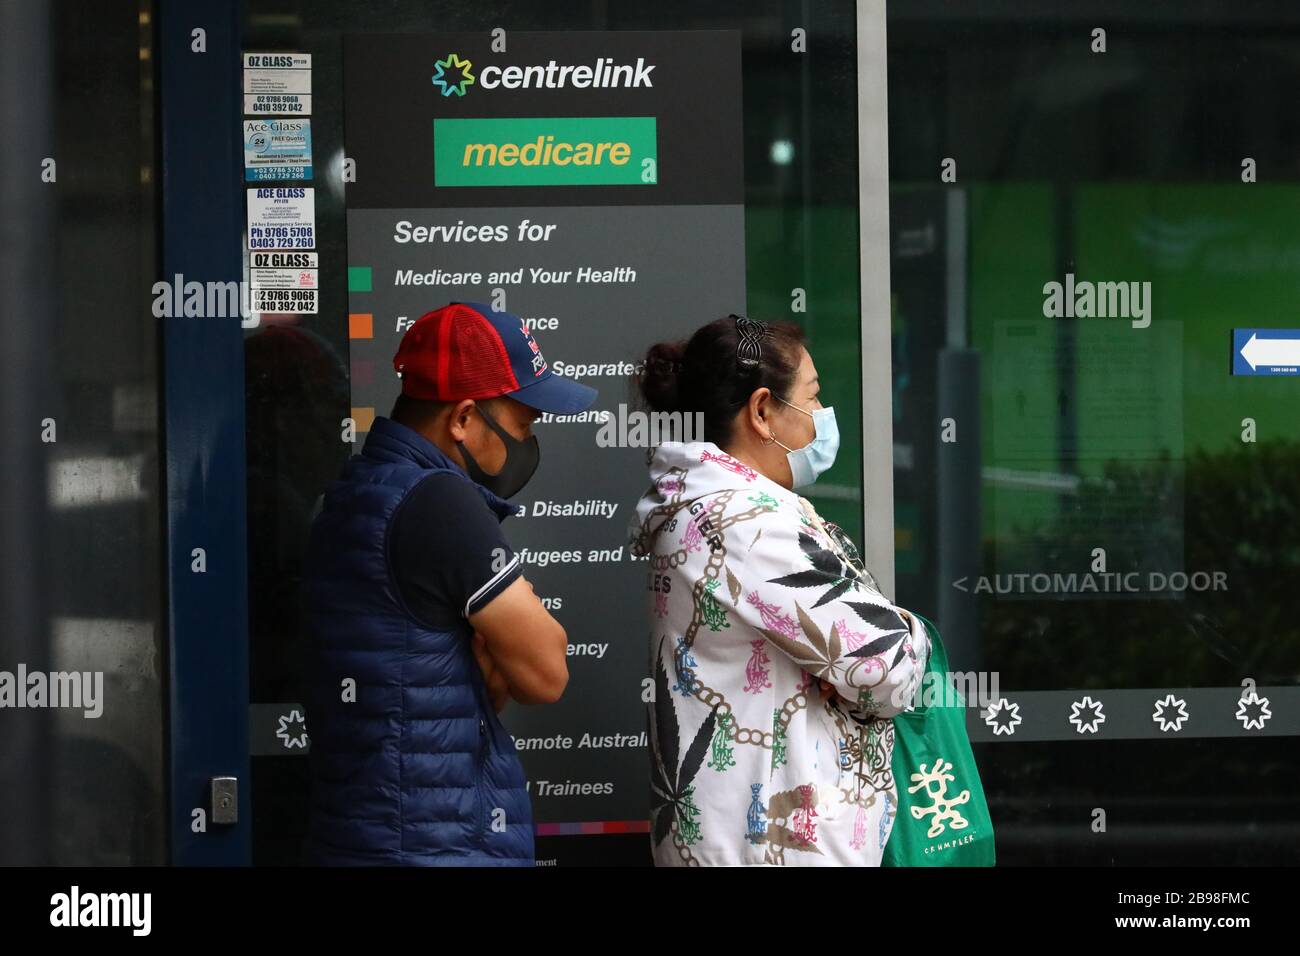 SYDNEY, AUSTRALIEN, 24. März 2020, Menschen werden sich auf einen Besuch eines Centrelink-Servicezentrums in Burwood, Sydney, einlassen, nachdem Arbeitsplatzverluste durch Coronavirus zu einem Anstieg der Nachfrage nach Arbeitslosengeld geführt haben. Credit: Sebastian Reategui/Alamy Live News Stockfoto